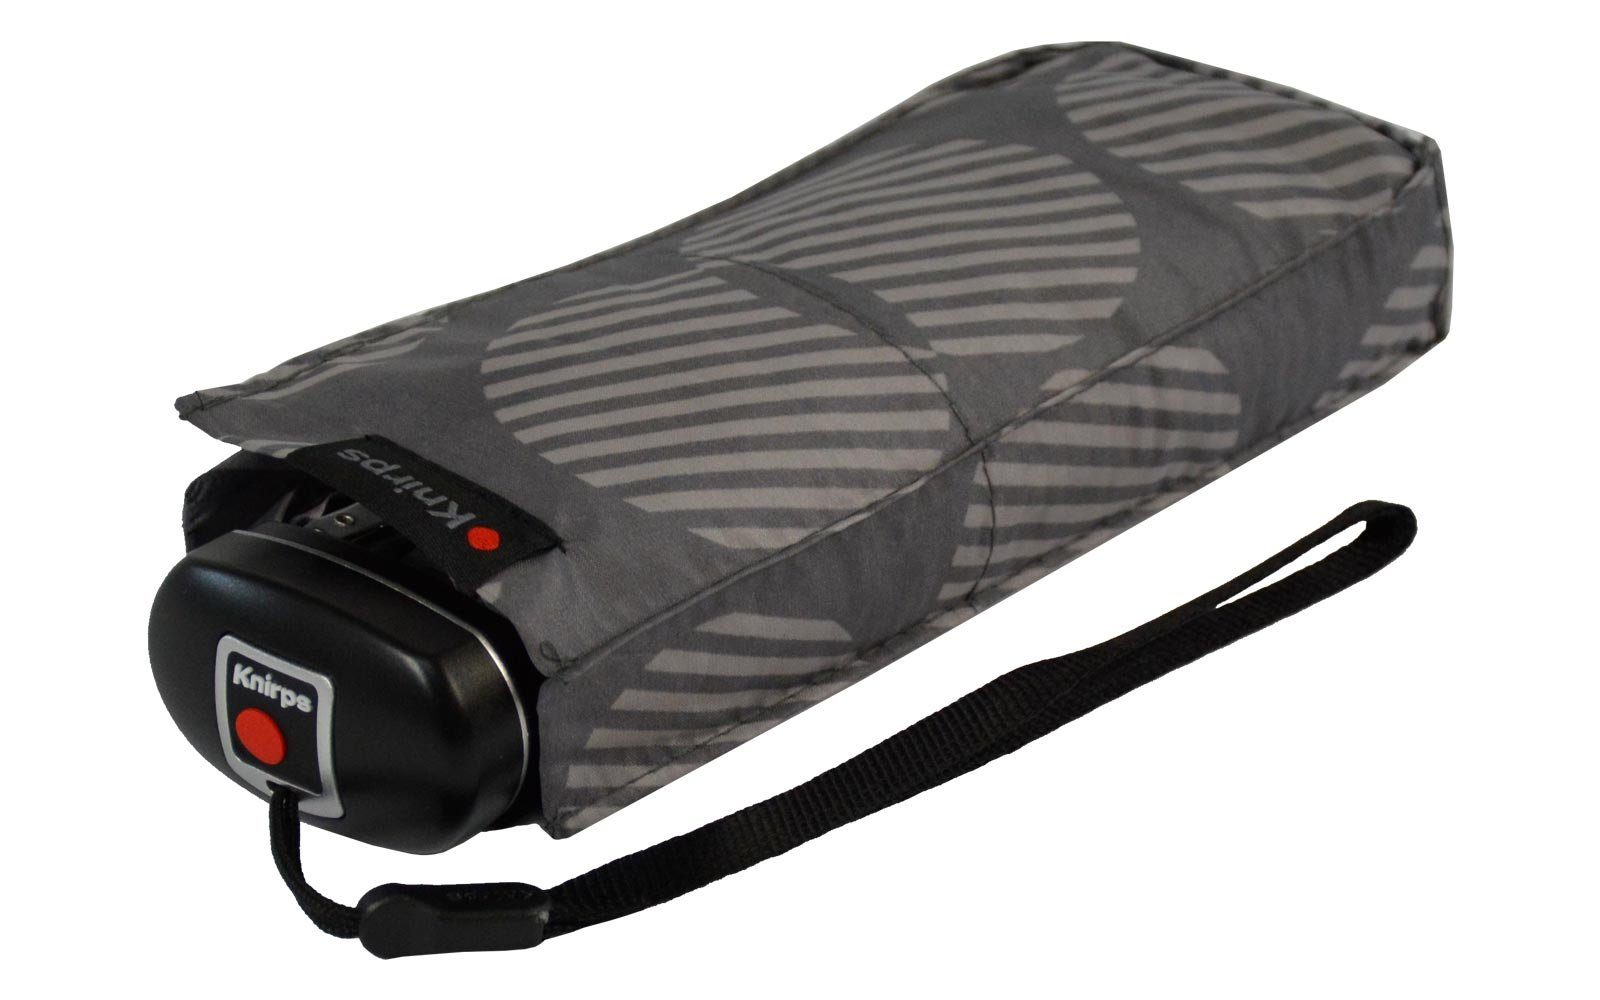 Knirps® Taschenregenschirm Mini-Schirm Travel UV-Schutz, klein zuverlässige passt in jede Tasche Begleiter, der leicht der kompakt